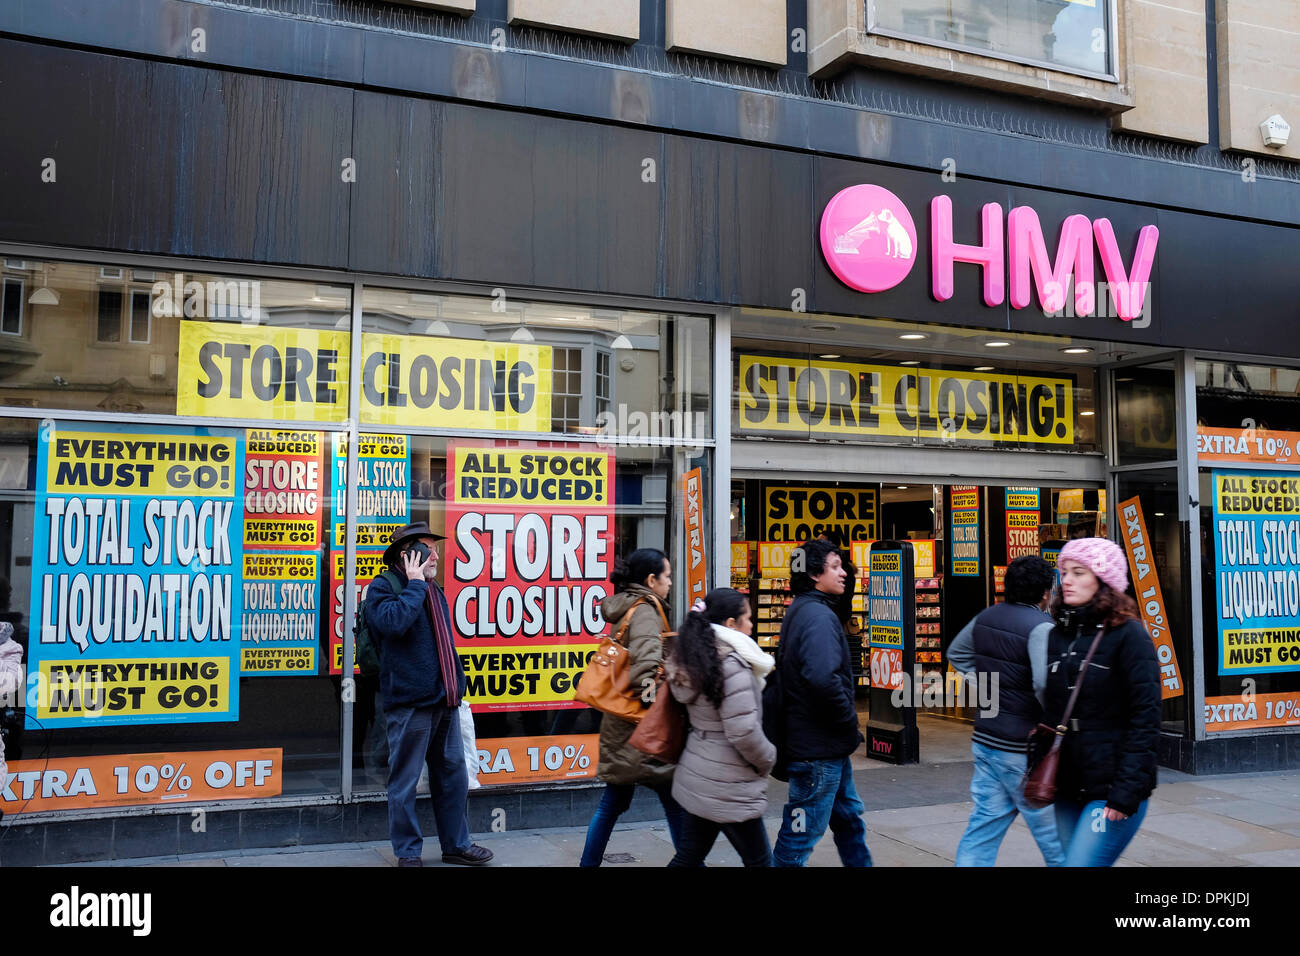 Oxford, UK. 14 janvier 2014. Le HMV store sur Cornmarket Street est fermé à la fin de février avant de déménager dans un nouveau magasin dans un lieu qui reste encore à être annoncé. La vente a tout stock prix réduit. Crédit : Andrew Paterson/Alamy Live News Banque D'Images